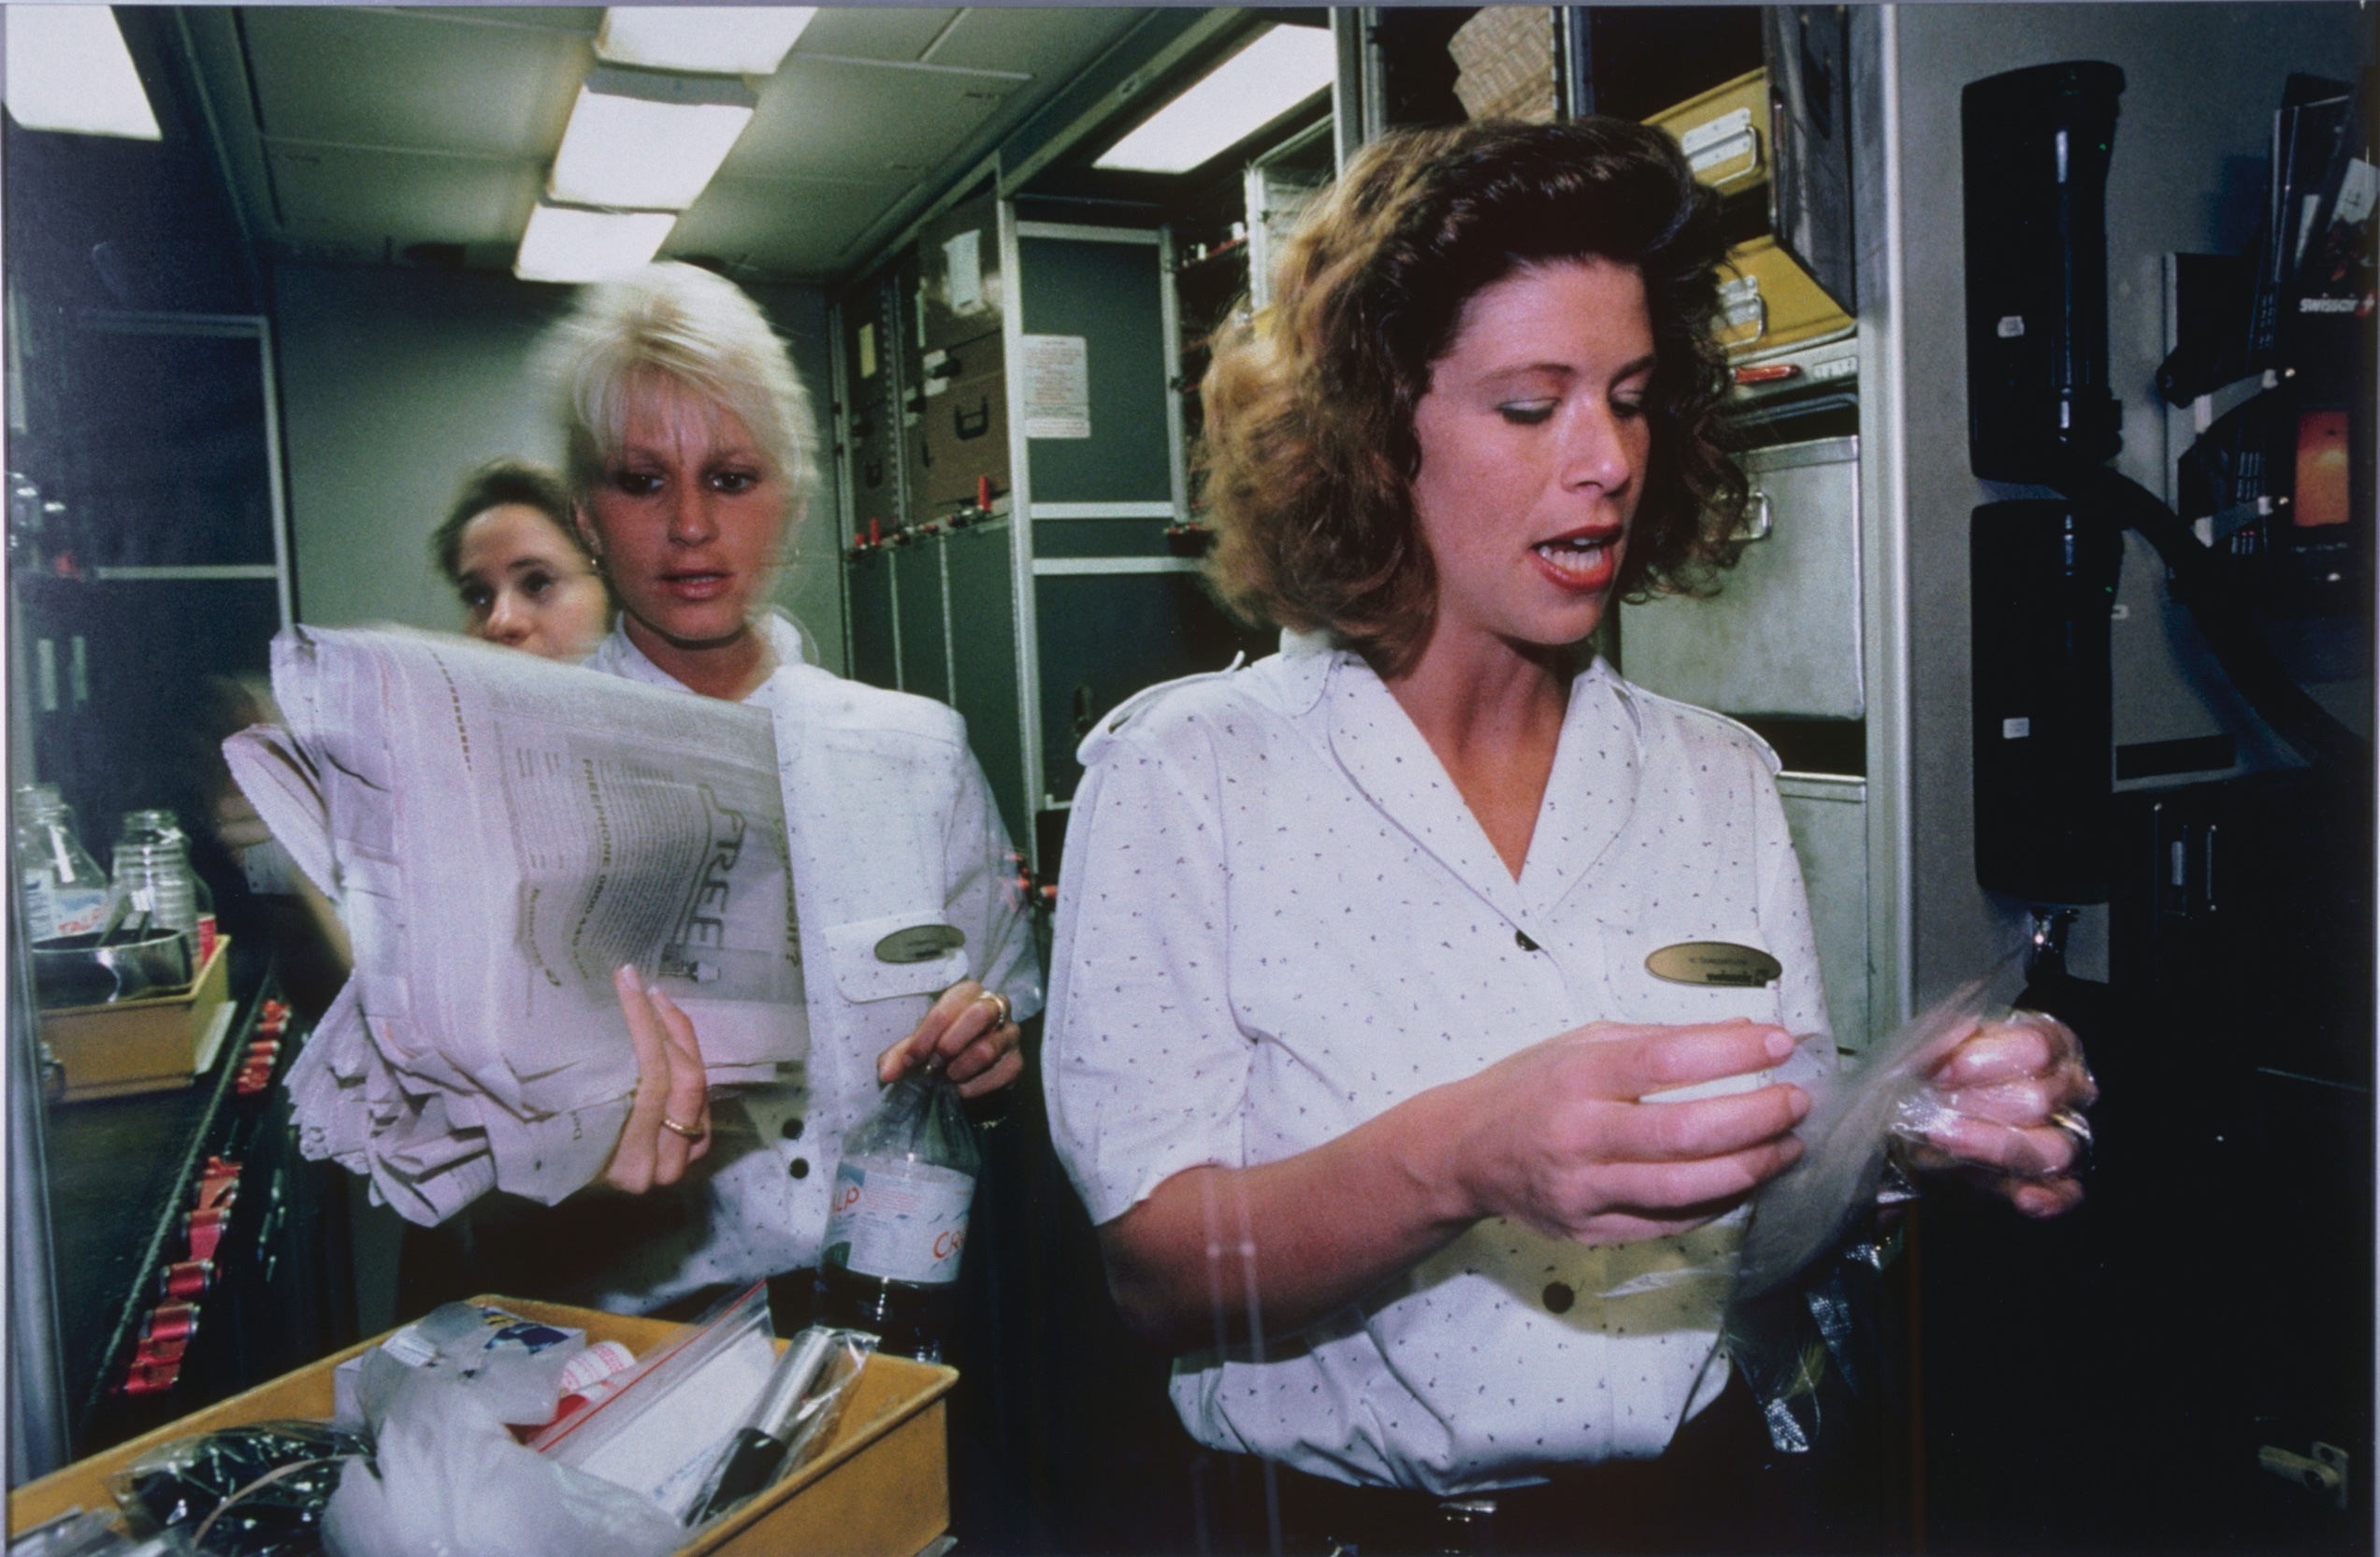 Auf dem Bild sind 3 Frauen mit weissen Blusen zu sehen. Eine Frau hält eine Zeitung und eine Wasserflasche und eine andere hält etwas in Plastik eingepacktes in den Händen. Zudem tragen sie ein goldiges Namensschild. 